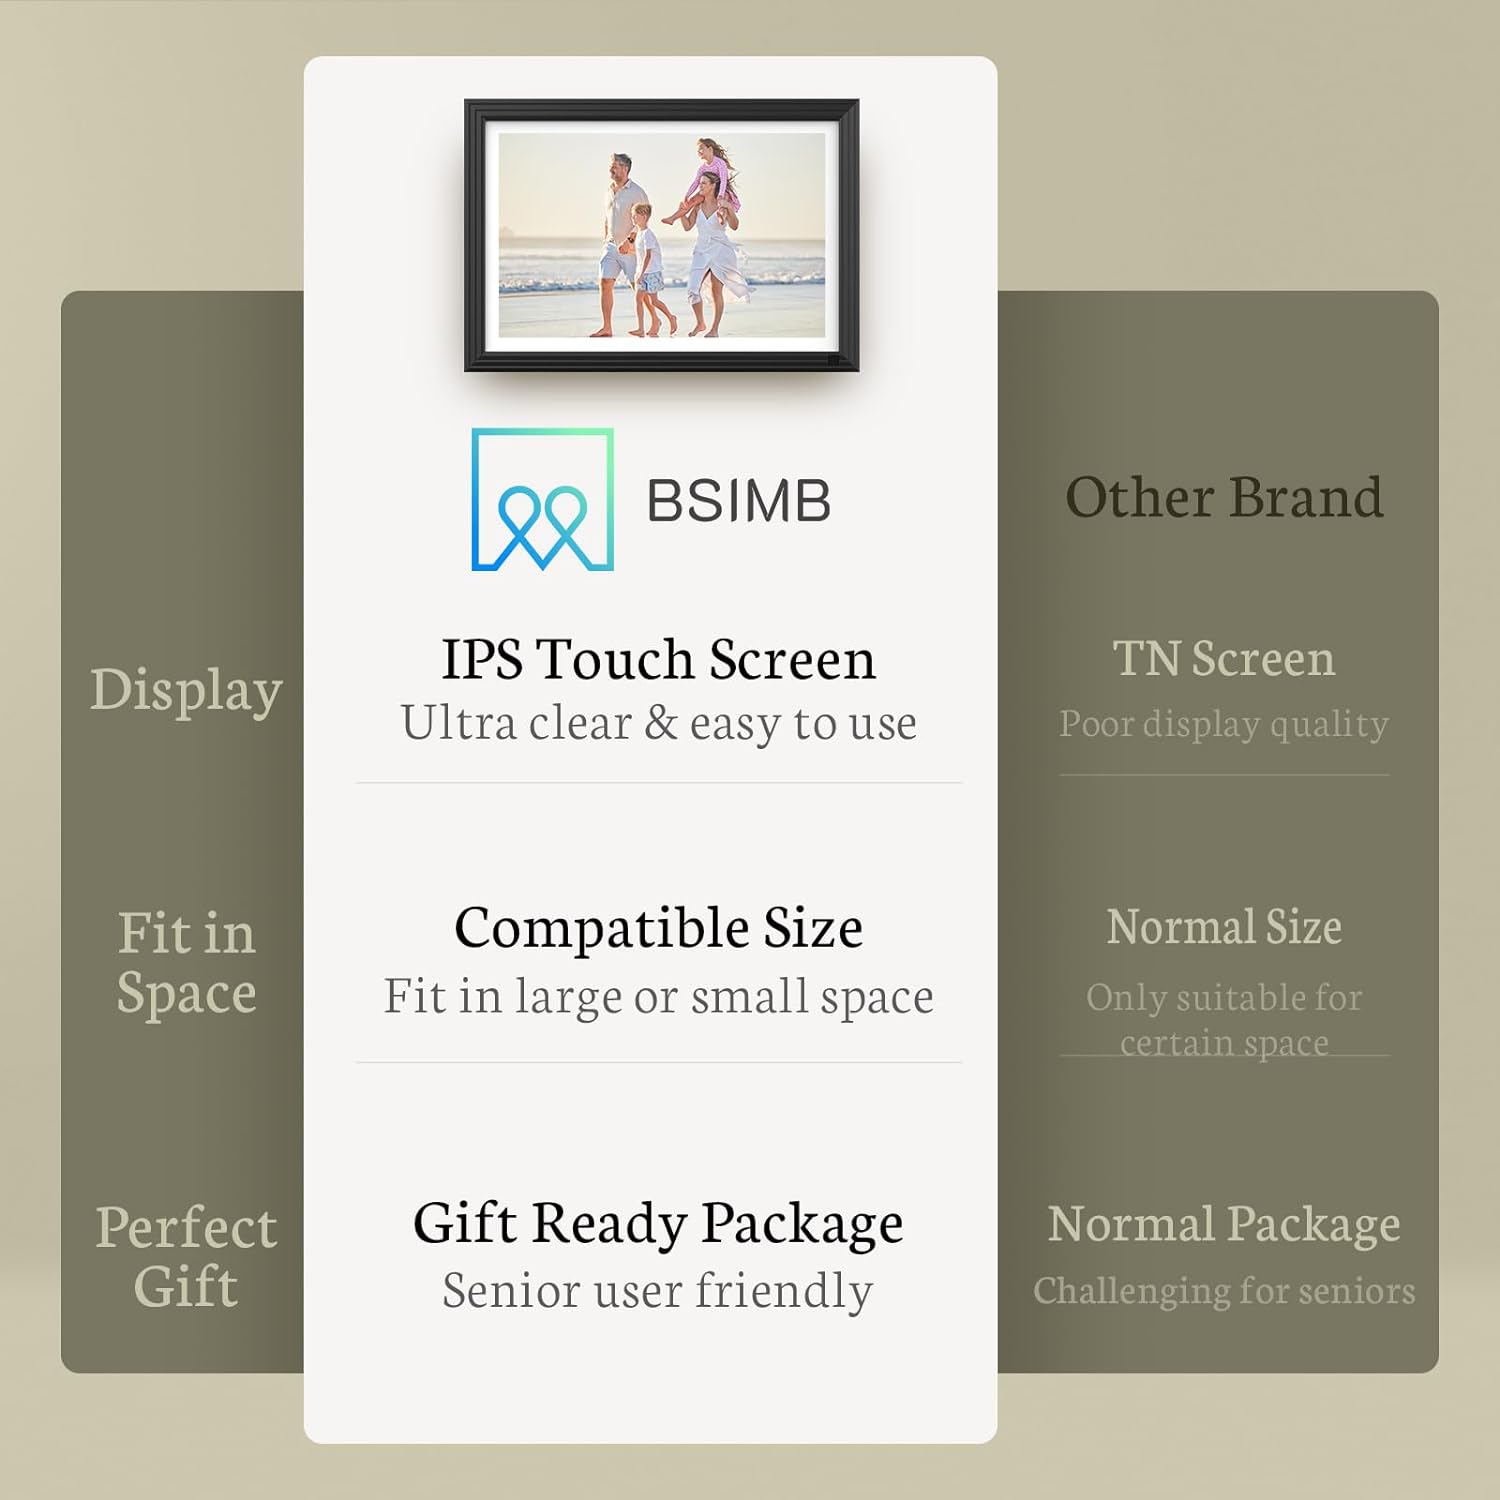 BSIMB 32GB WiFi Digital Picture Frame - $45